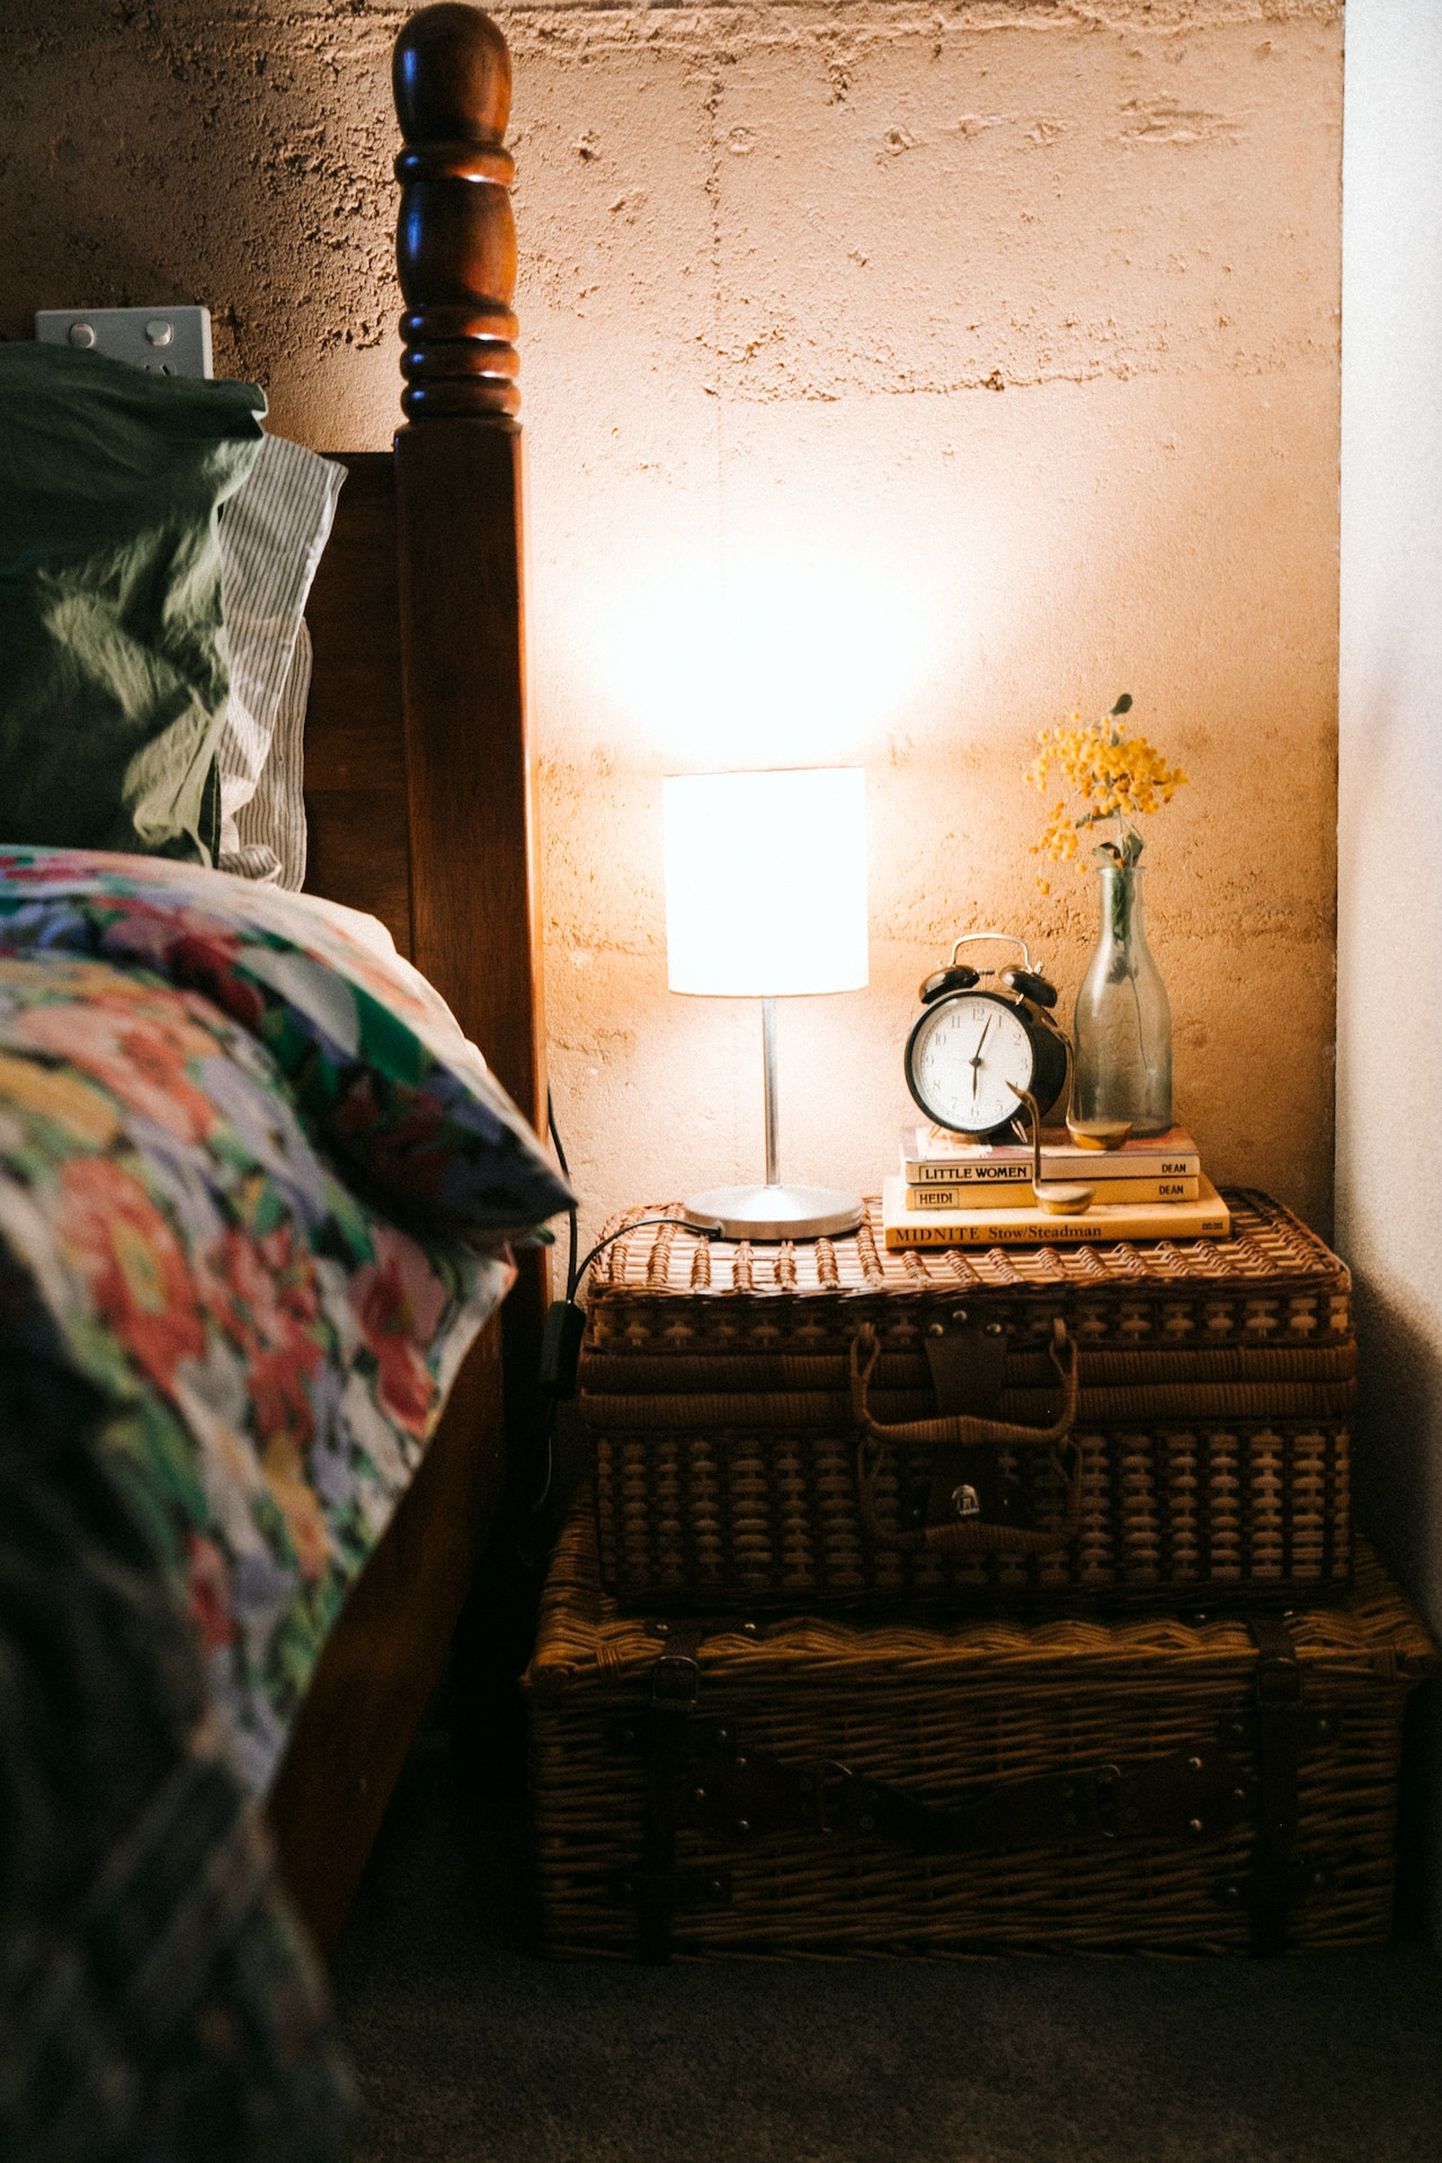 Обстановка и температура воздуха в спальне крайне важны для хорошего сна